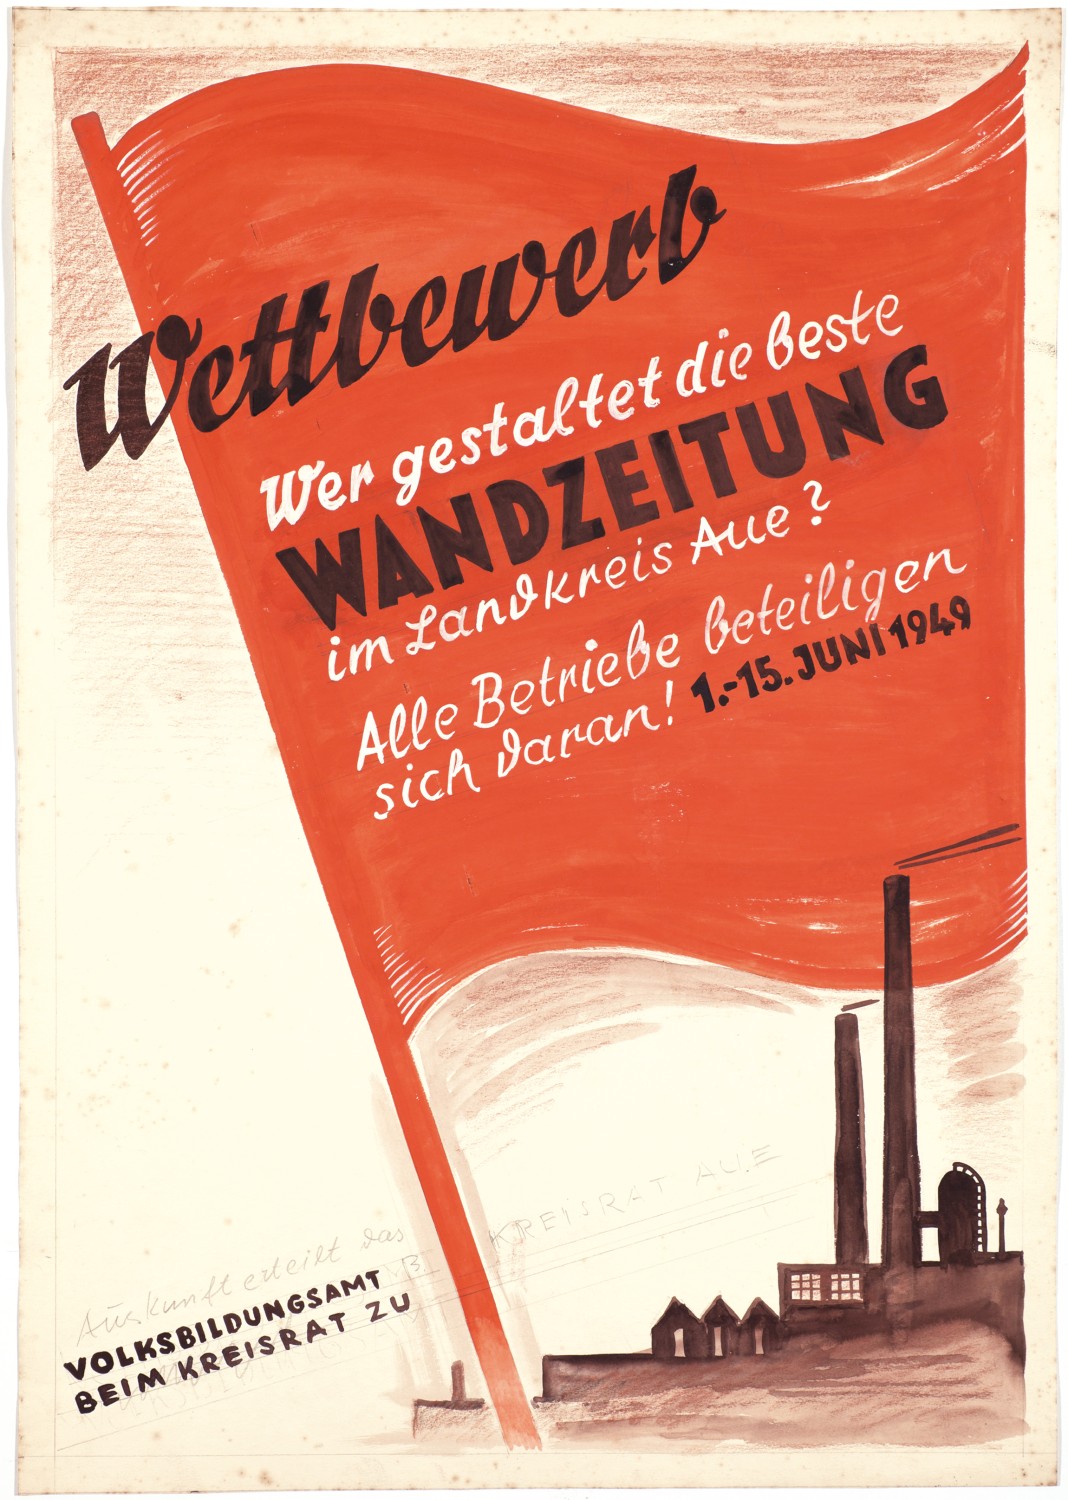 Kurt Teubner, Plakatentwurf  Wandzeitungswettbewerb 1949 im Landkreis Aue